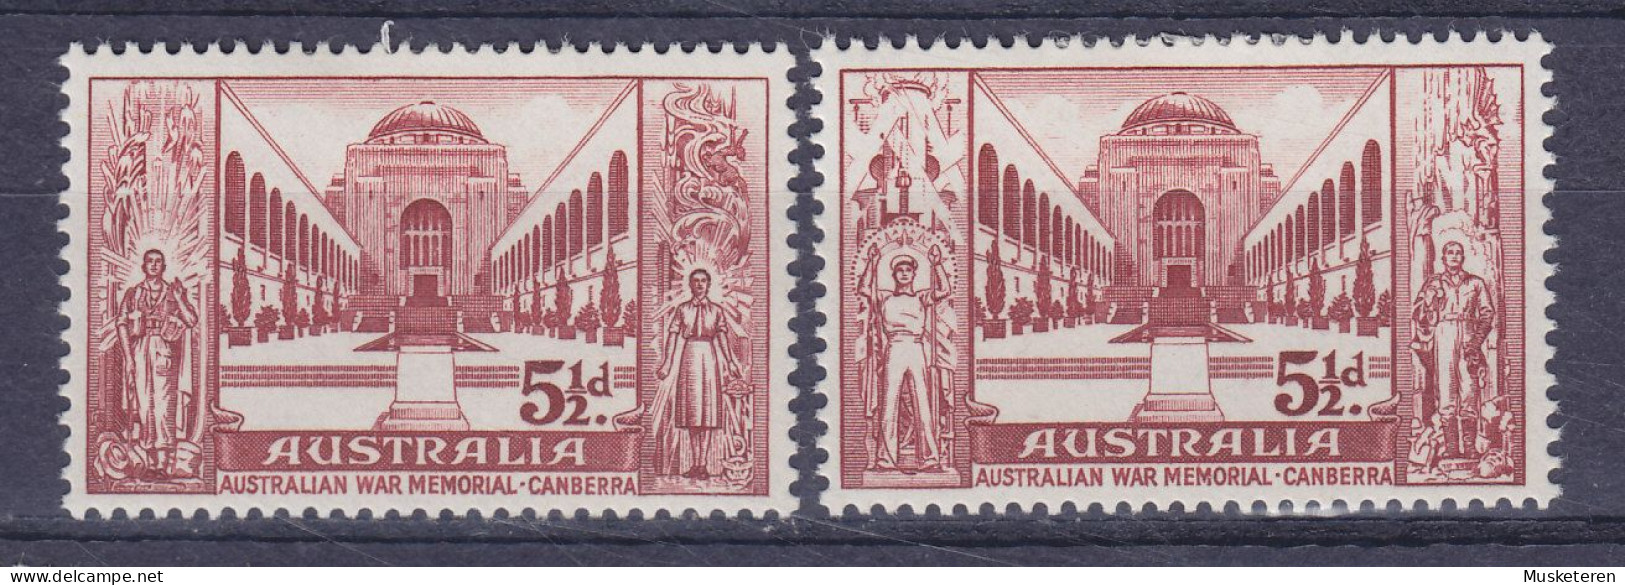 Australia 1958 Mi. 282-83, Kongress Der Ritischen Frontkämpfer, Canberra Complete Set, MH* - Mint Stamps